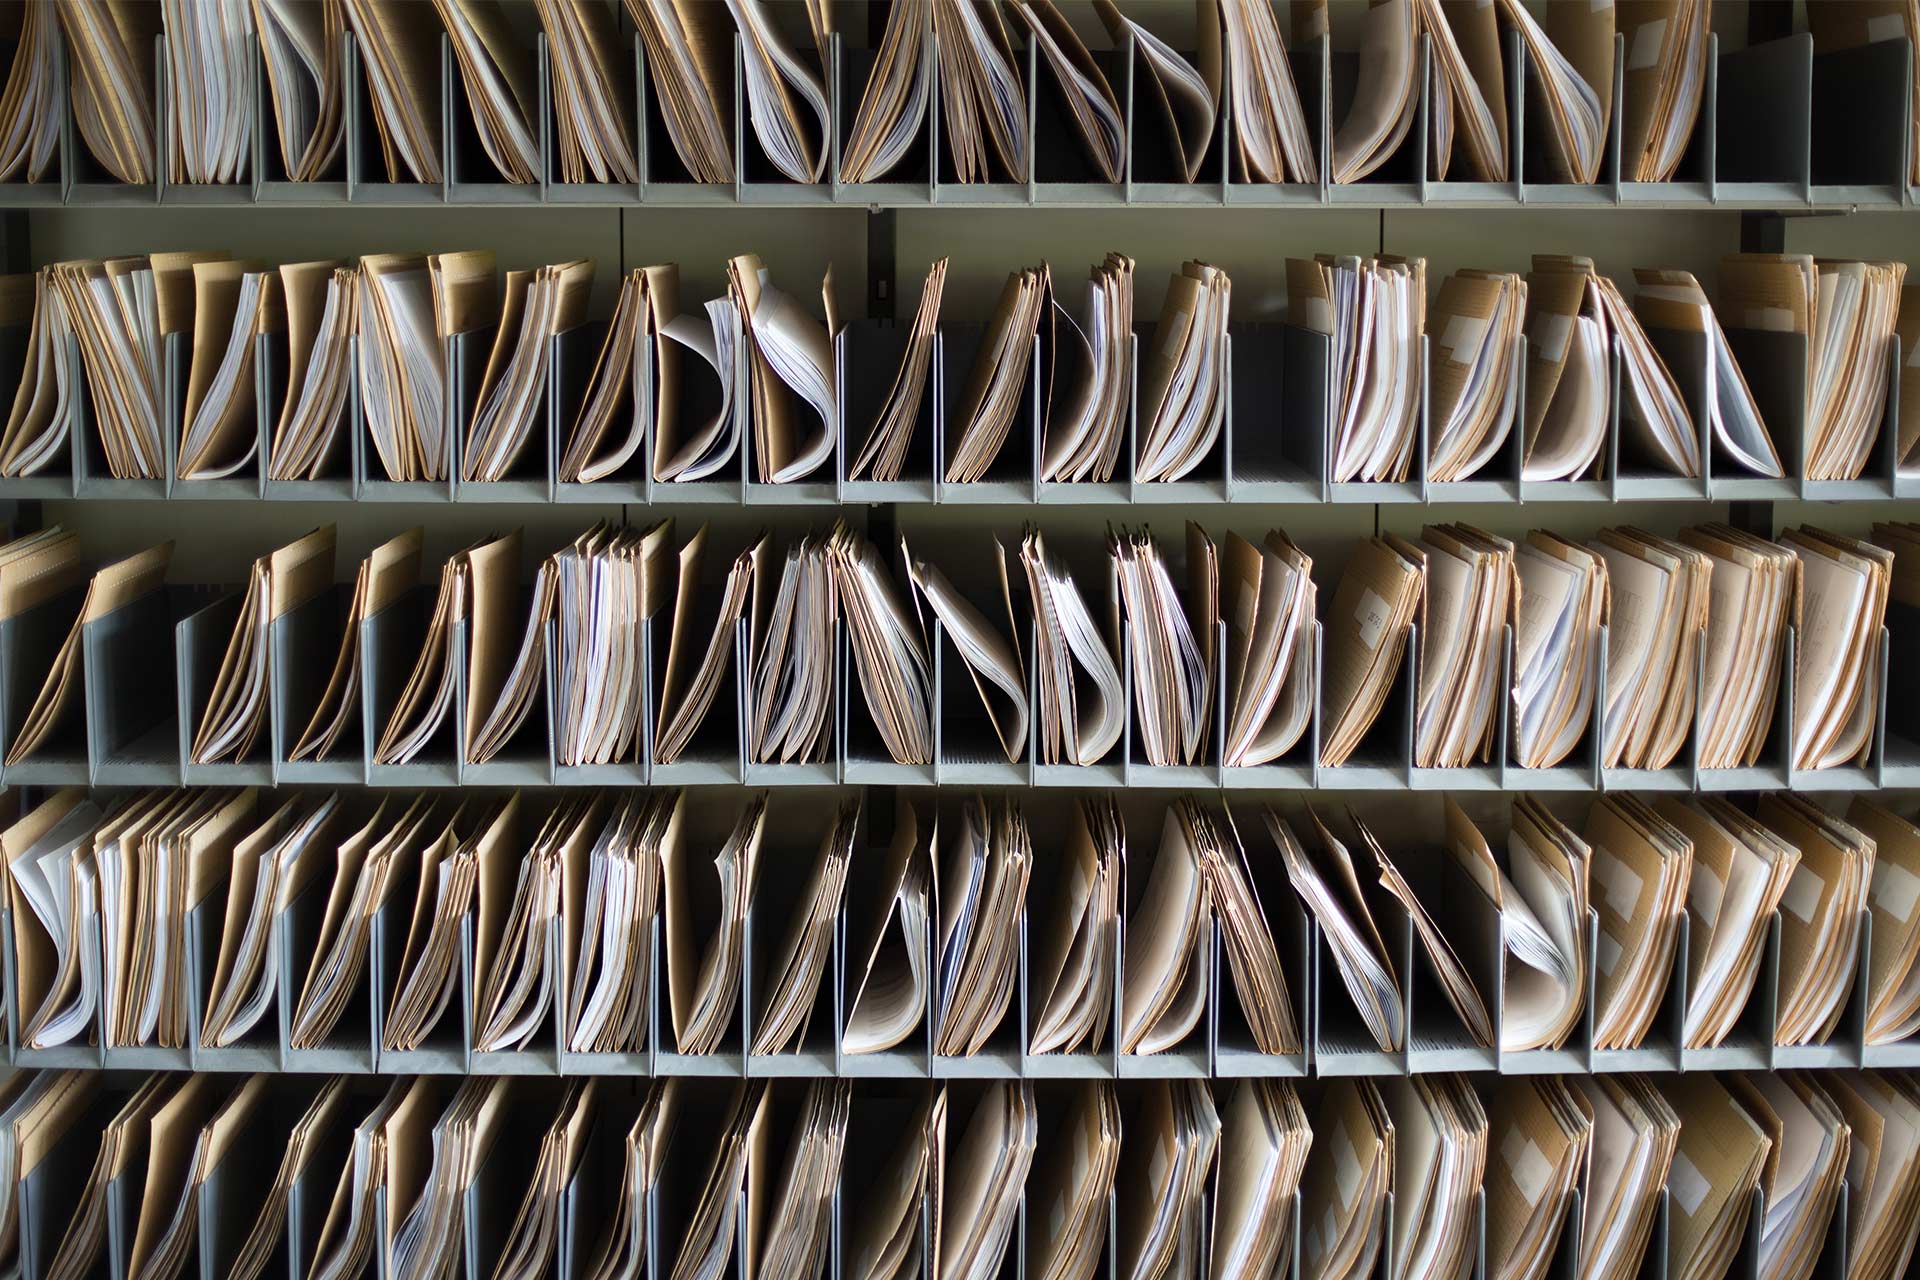 Rangées de documents papier dans des dossiers organisés en compartiments